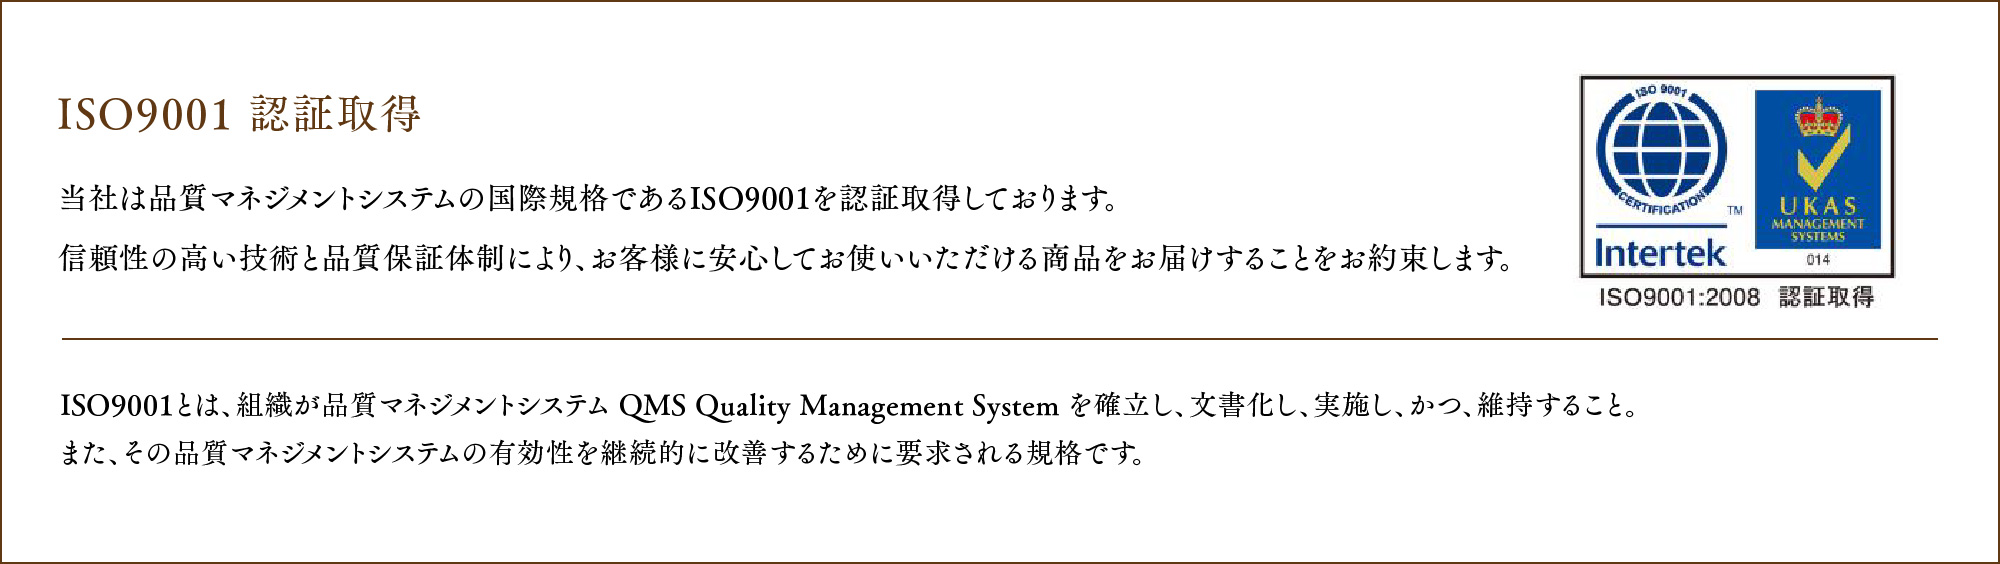 ISO9001 認証取得 当社は品質マネジメントシステムの国際規格であるISO9001 を認証取得しております。
				信頼性の高い技術と品質保証体制により、お客様に安心してお使いいただける商品をお届けすることをお約束します。ISO9001とは、組織が品質マネジメントシステム QMS Quality Management System を確立し、文書化し、実施し、かつ、維持すること。また、その品質マネジメントシステムの有効性を継続的に改善するために要求される規格です。